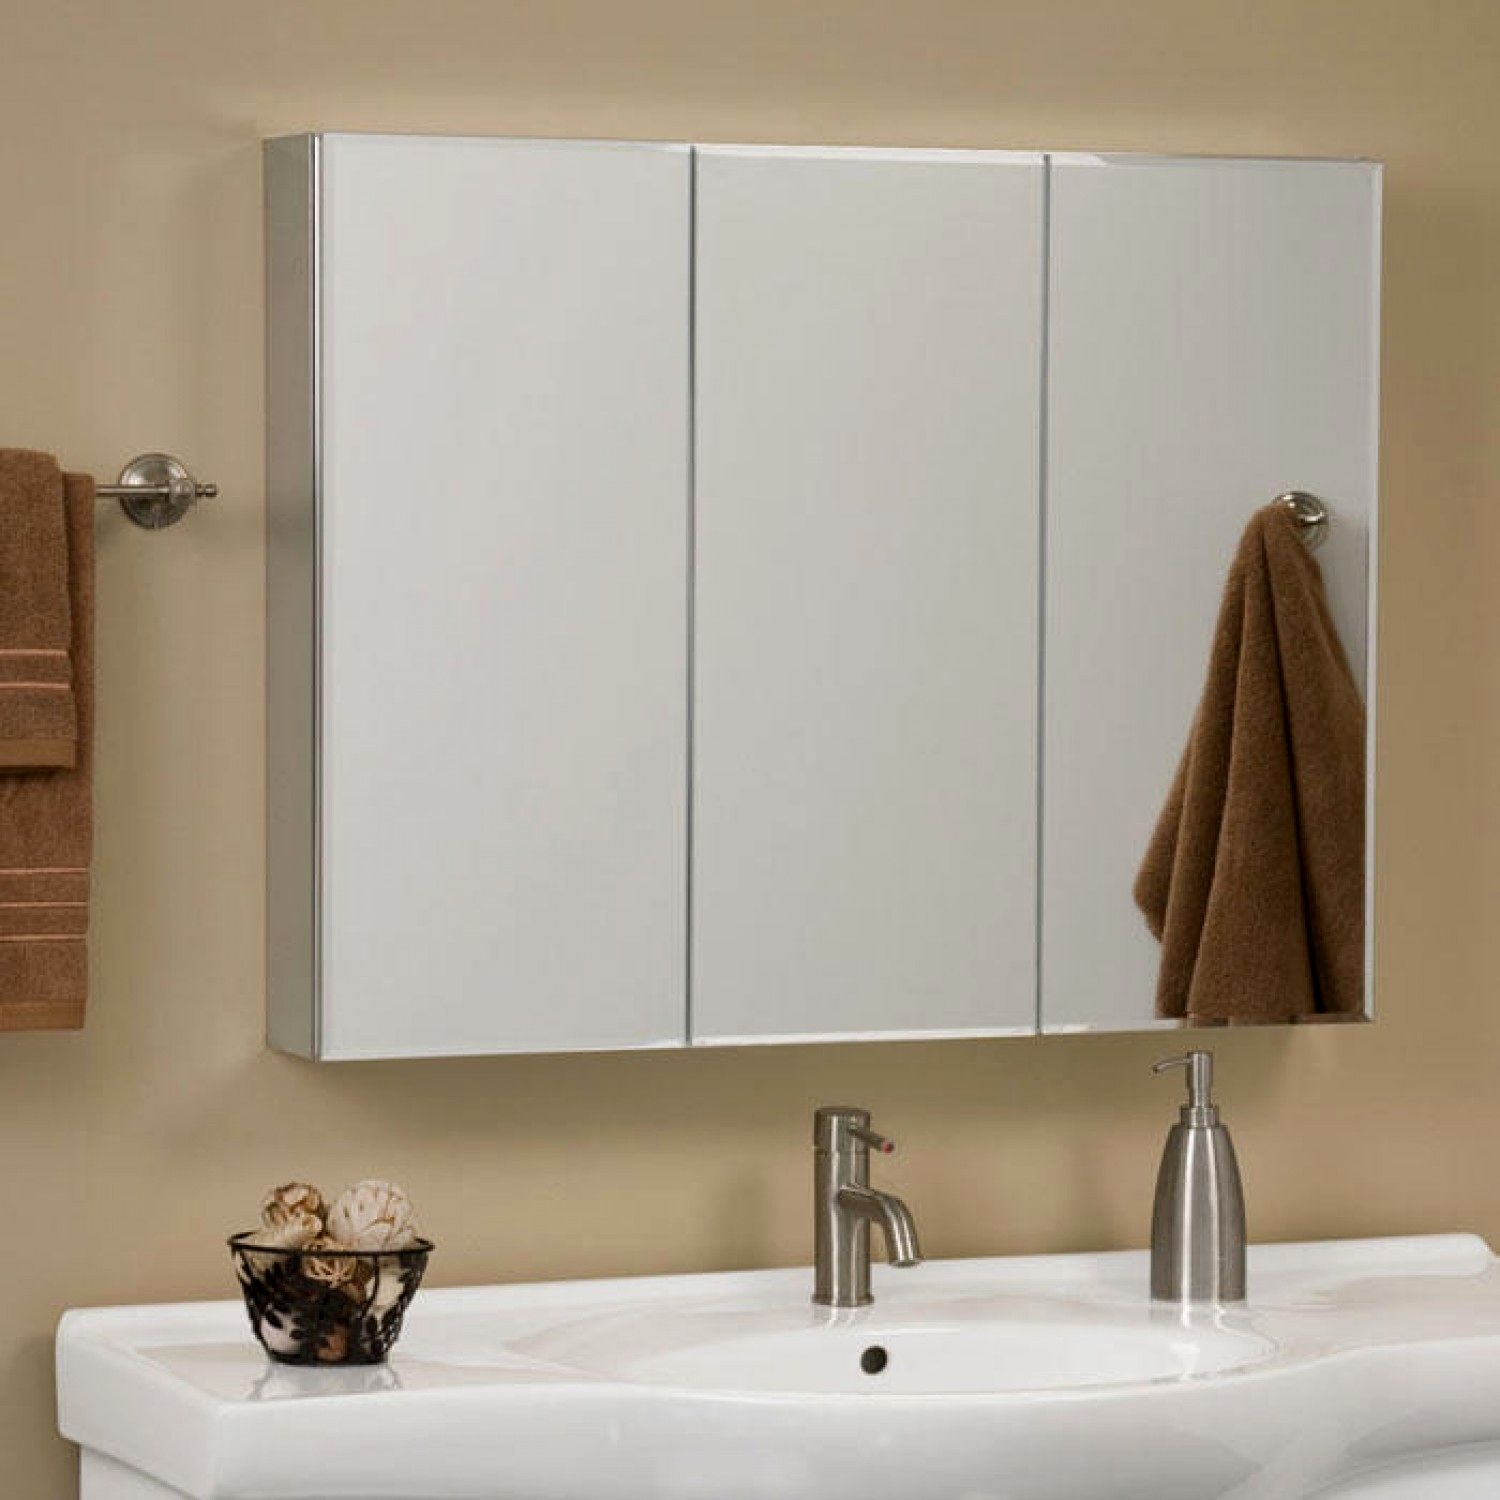 Tri fold bathroom mirror